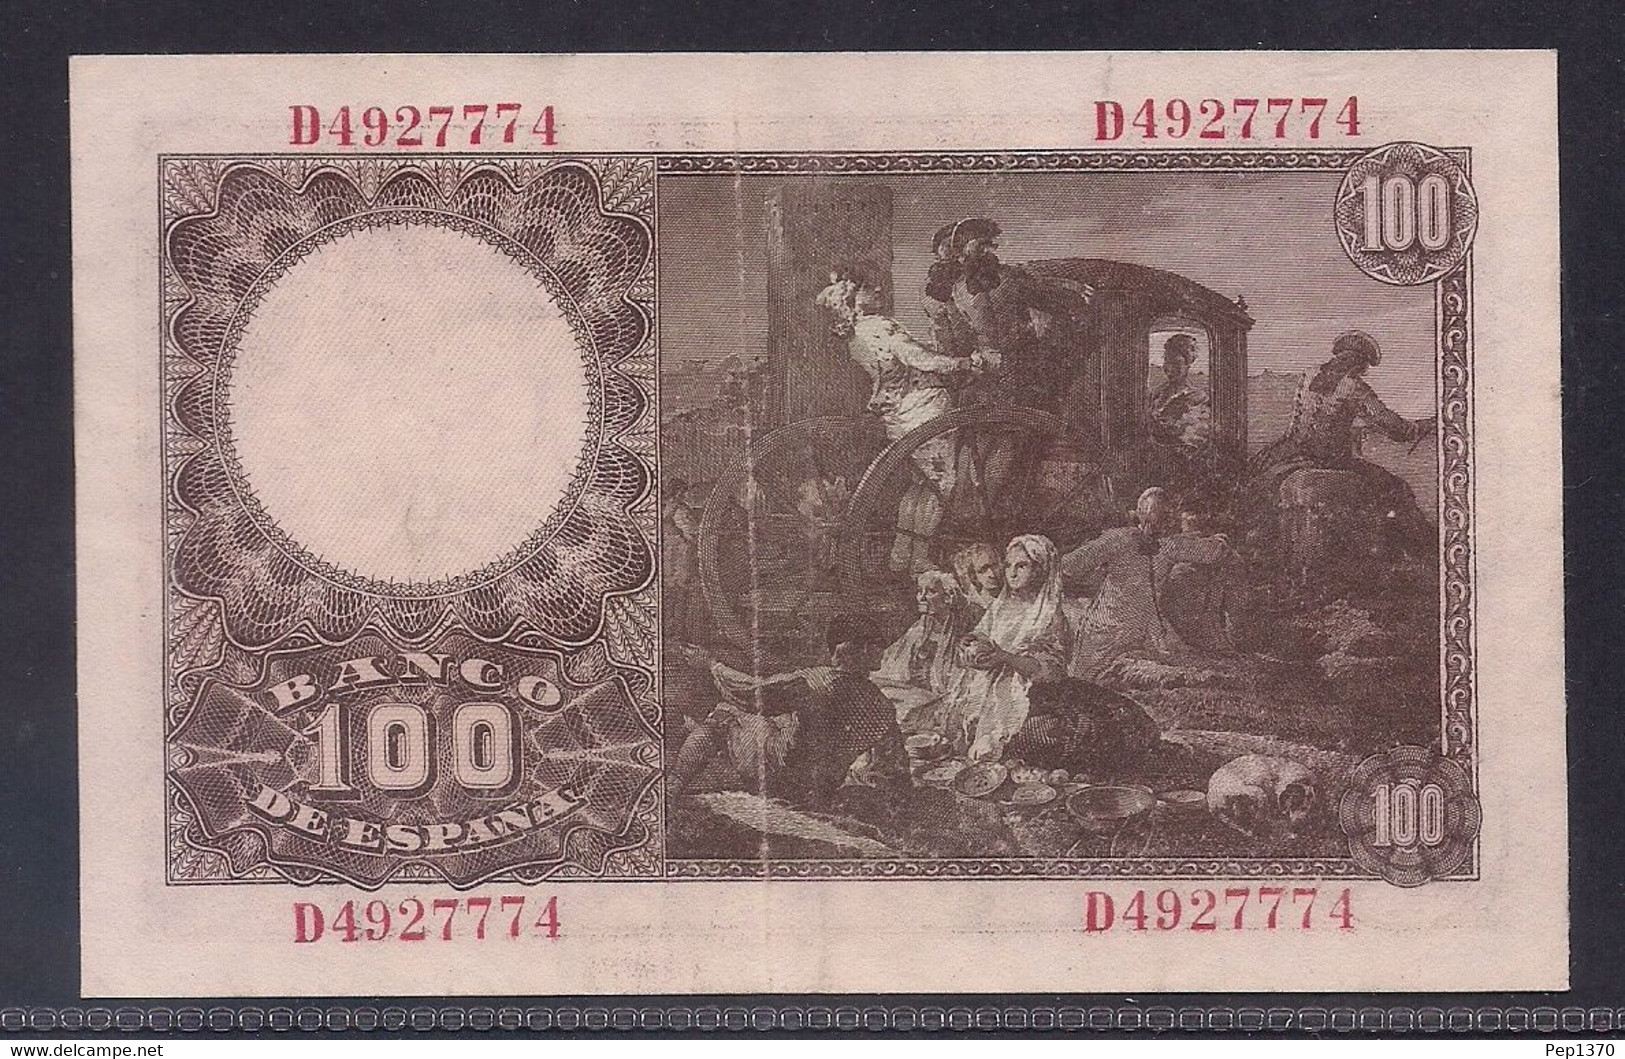 ESPAÑA - BILLETE DE 100 PESETAS DE 1948 DEDICADO A FRANCISCO BAYEU - EXCELENTE - 100 Pesetas